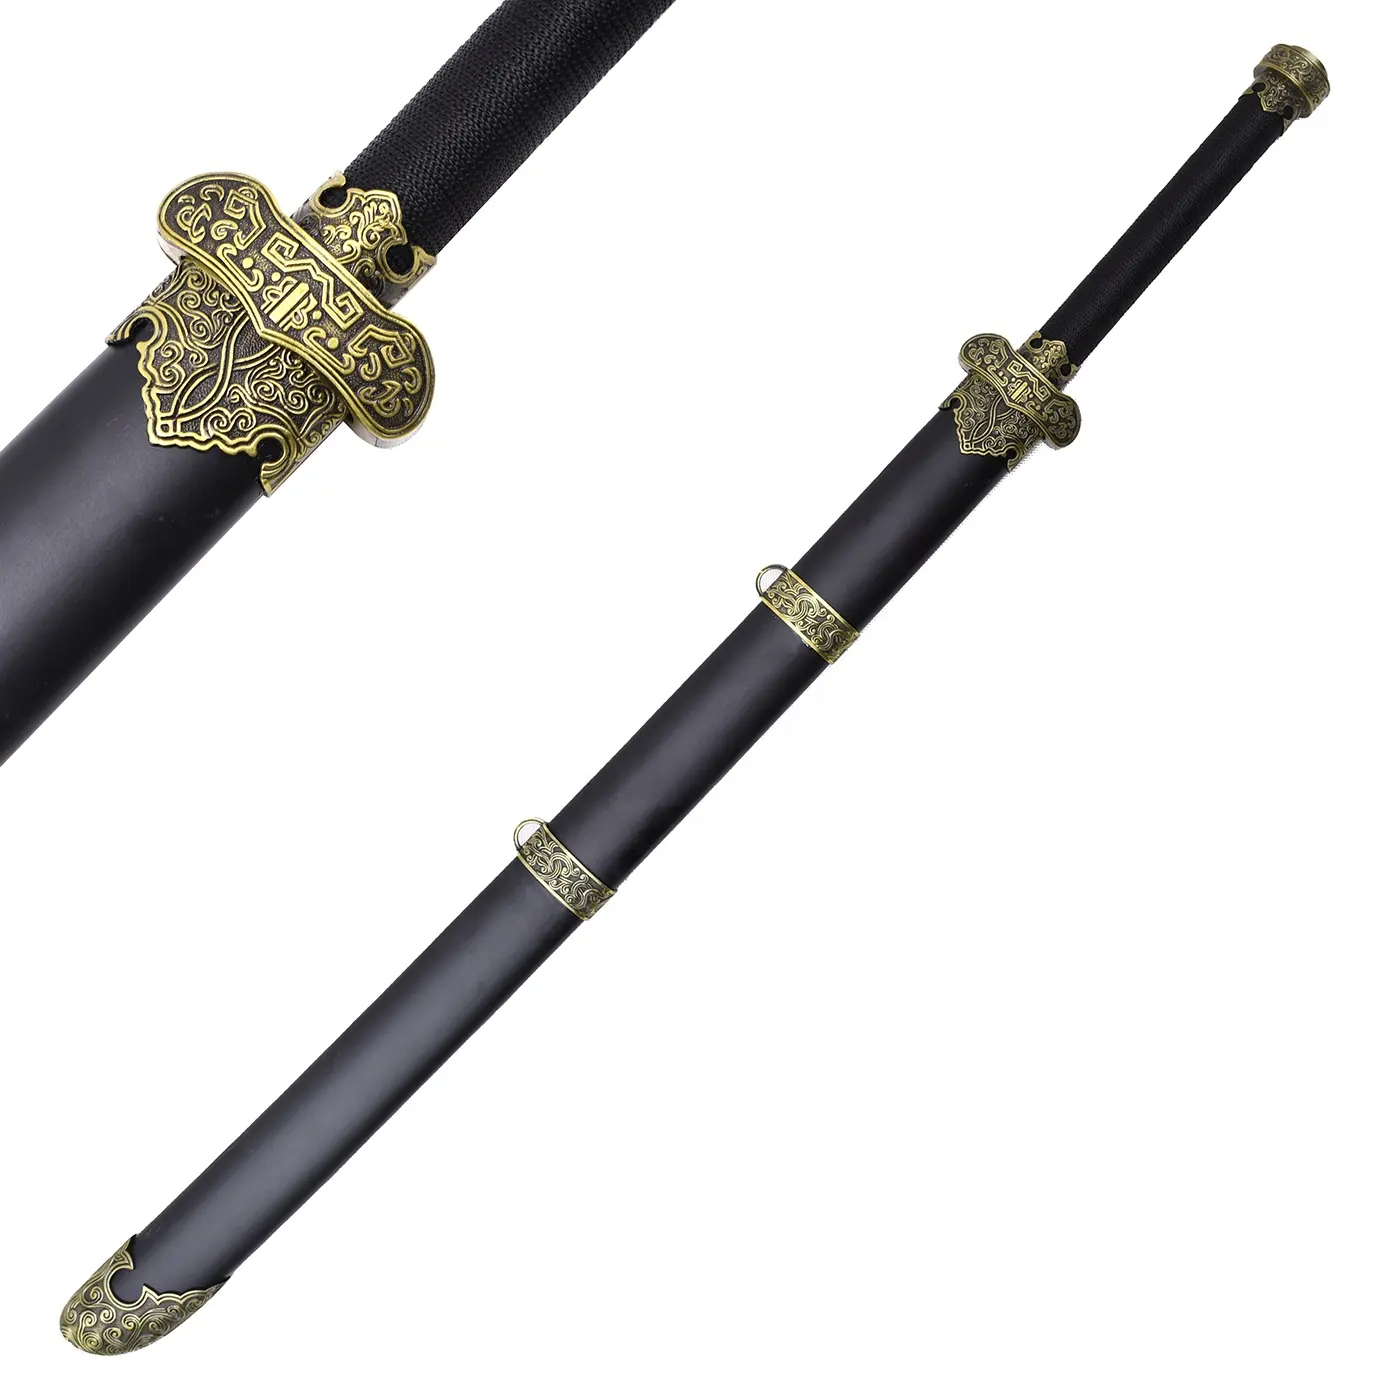 Time Raiders Kylin spada di Zhang oro nero coltelli antichi spade giocattolo spada cosplay